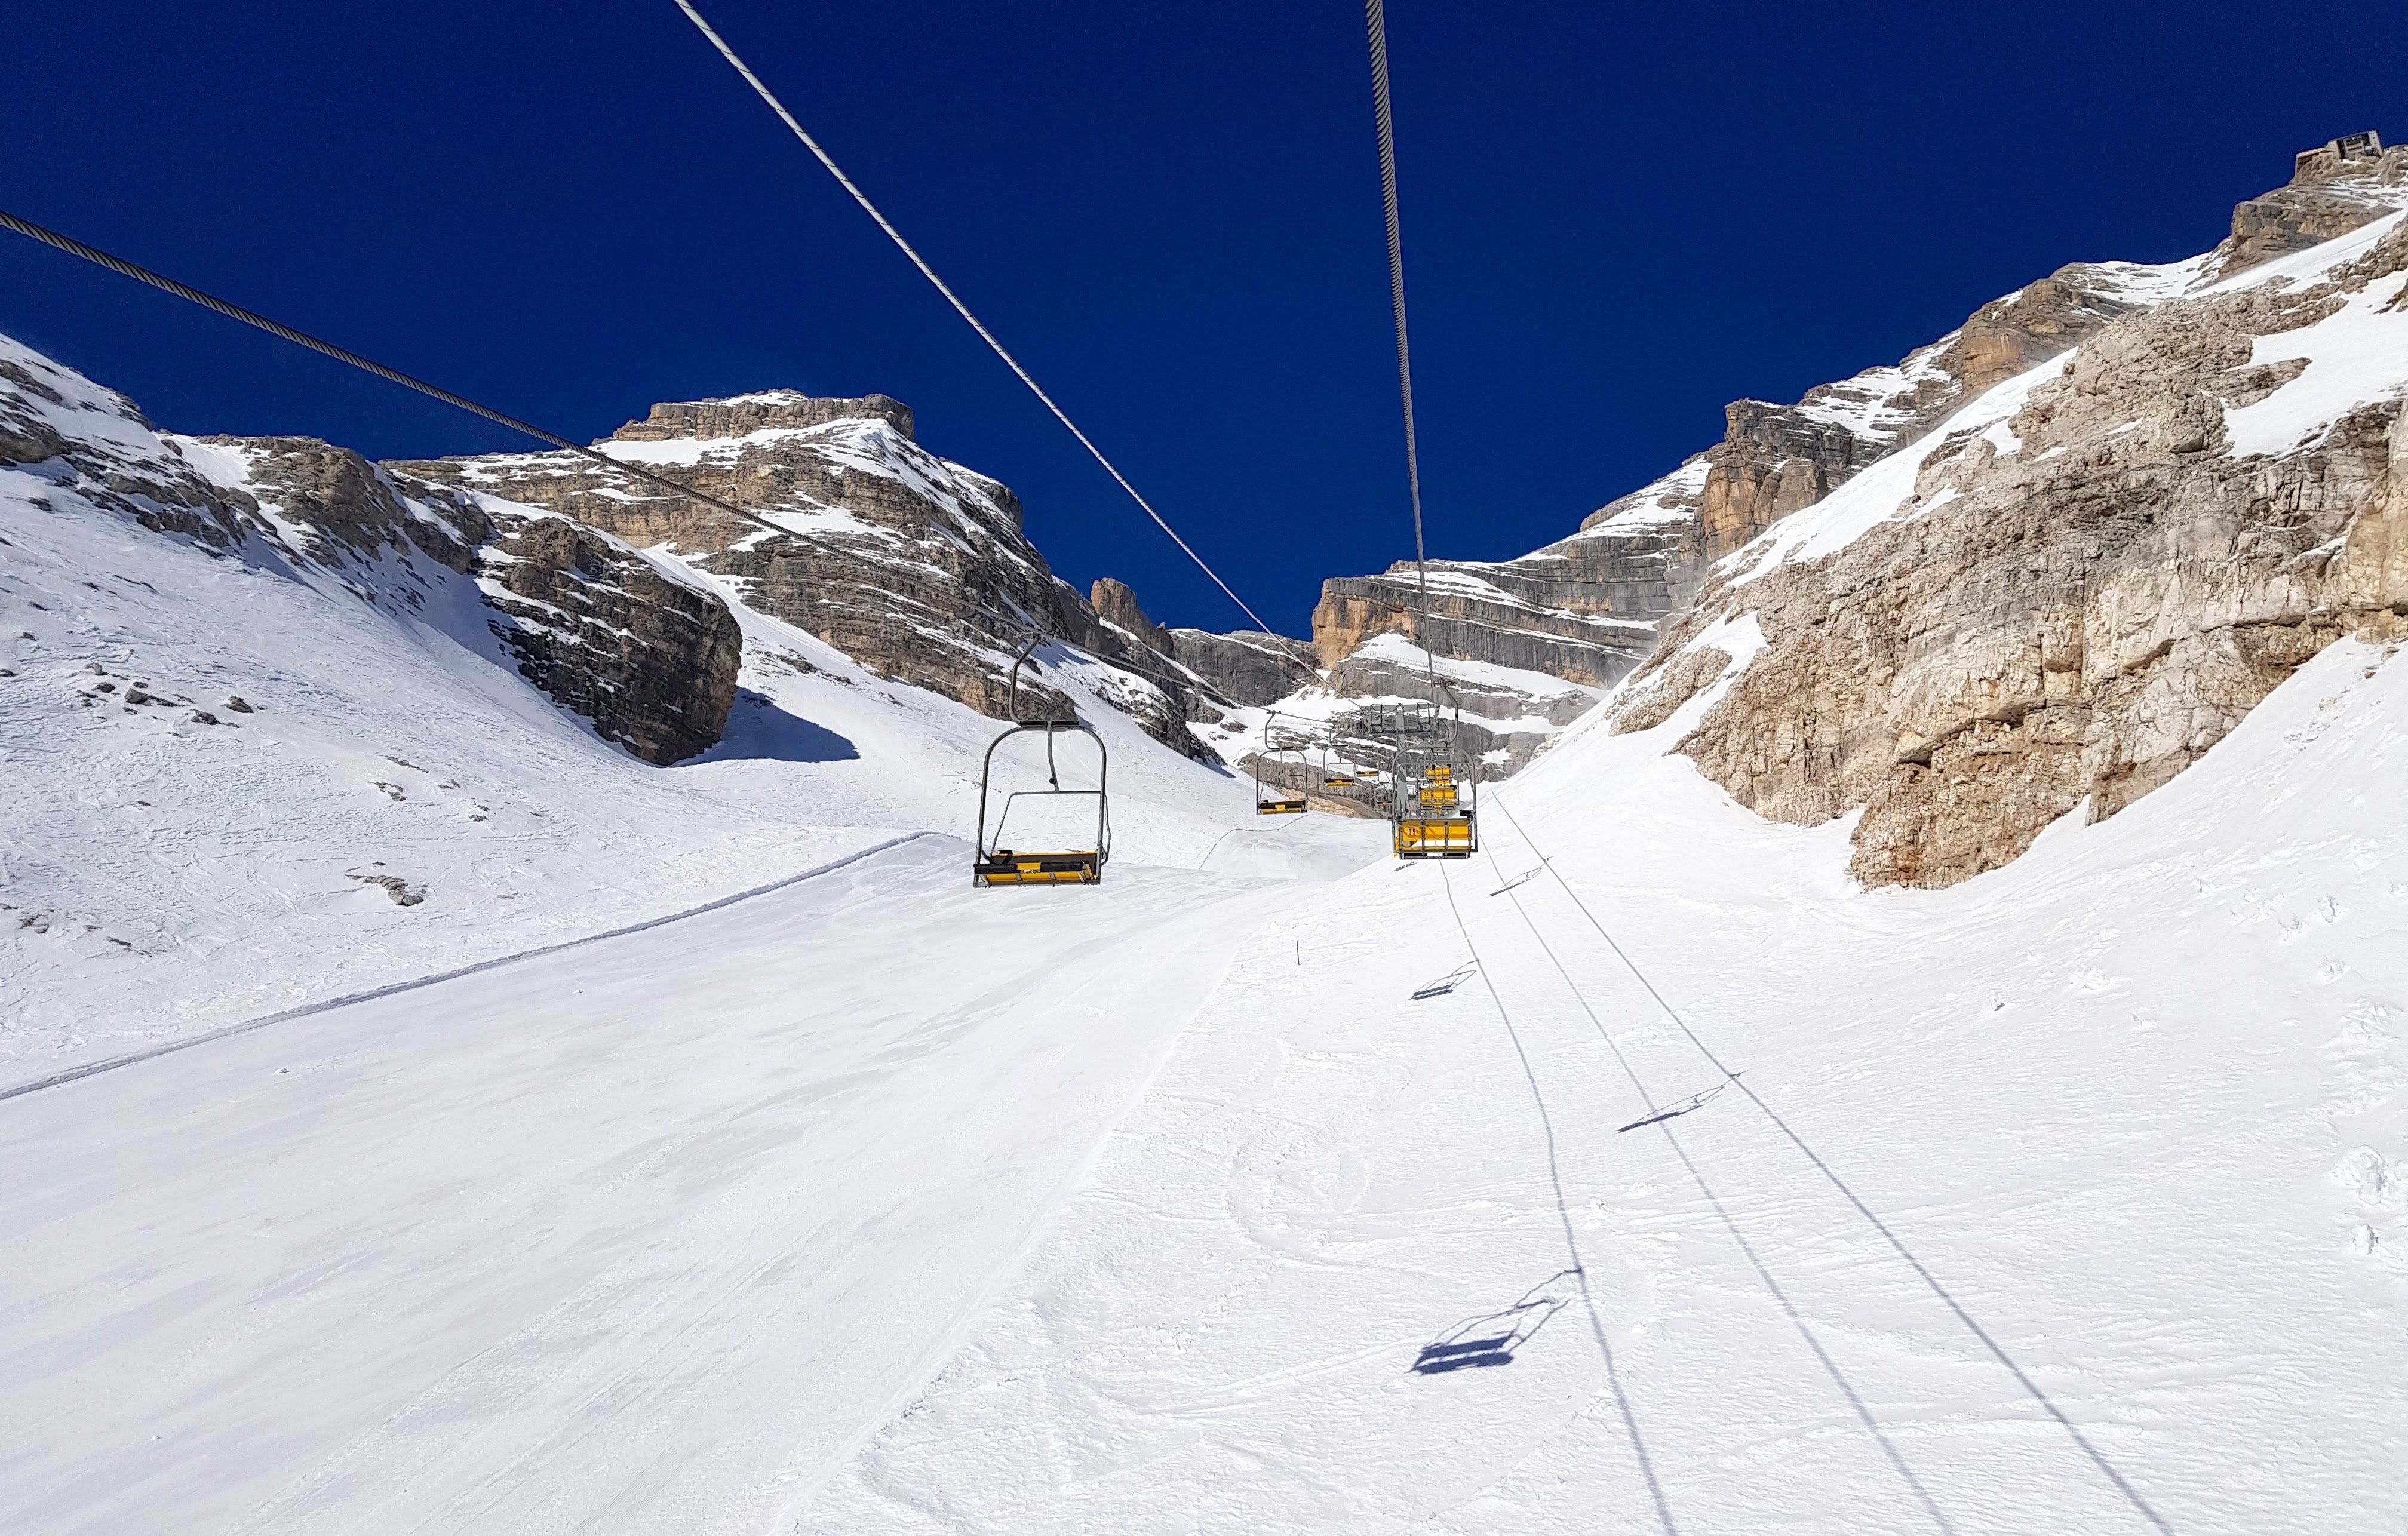 De hoogste lift waar je met ski's kunt komen (Ra Valles)